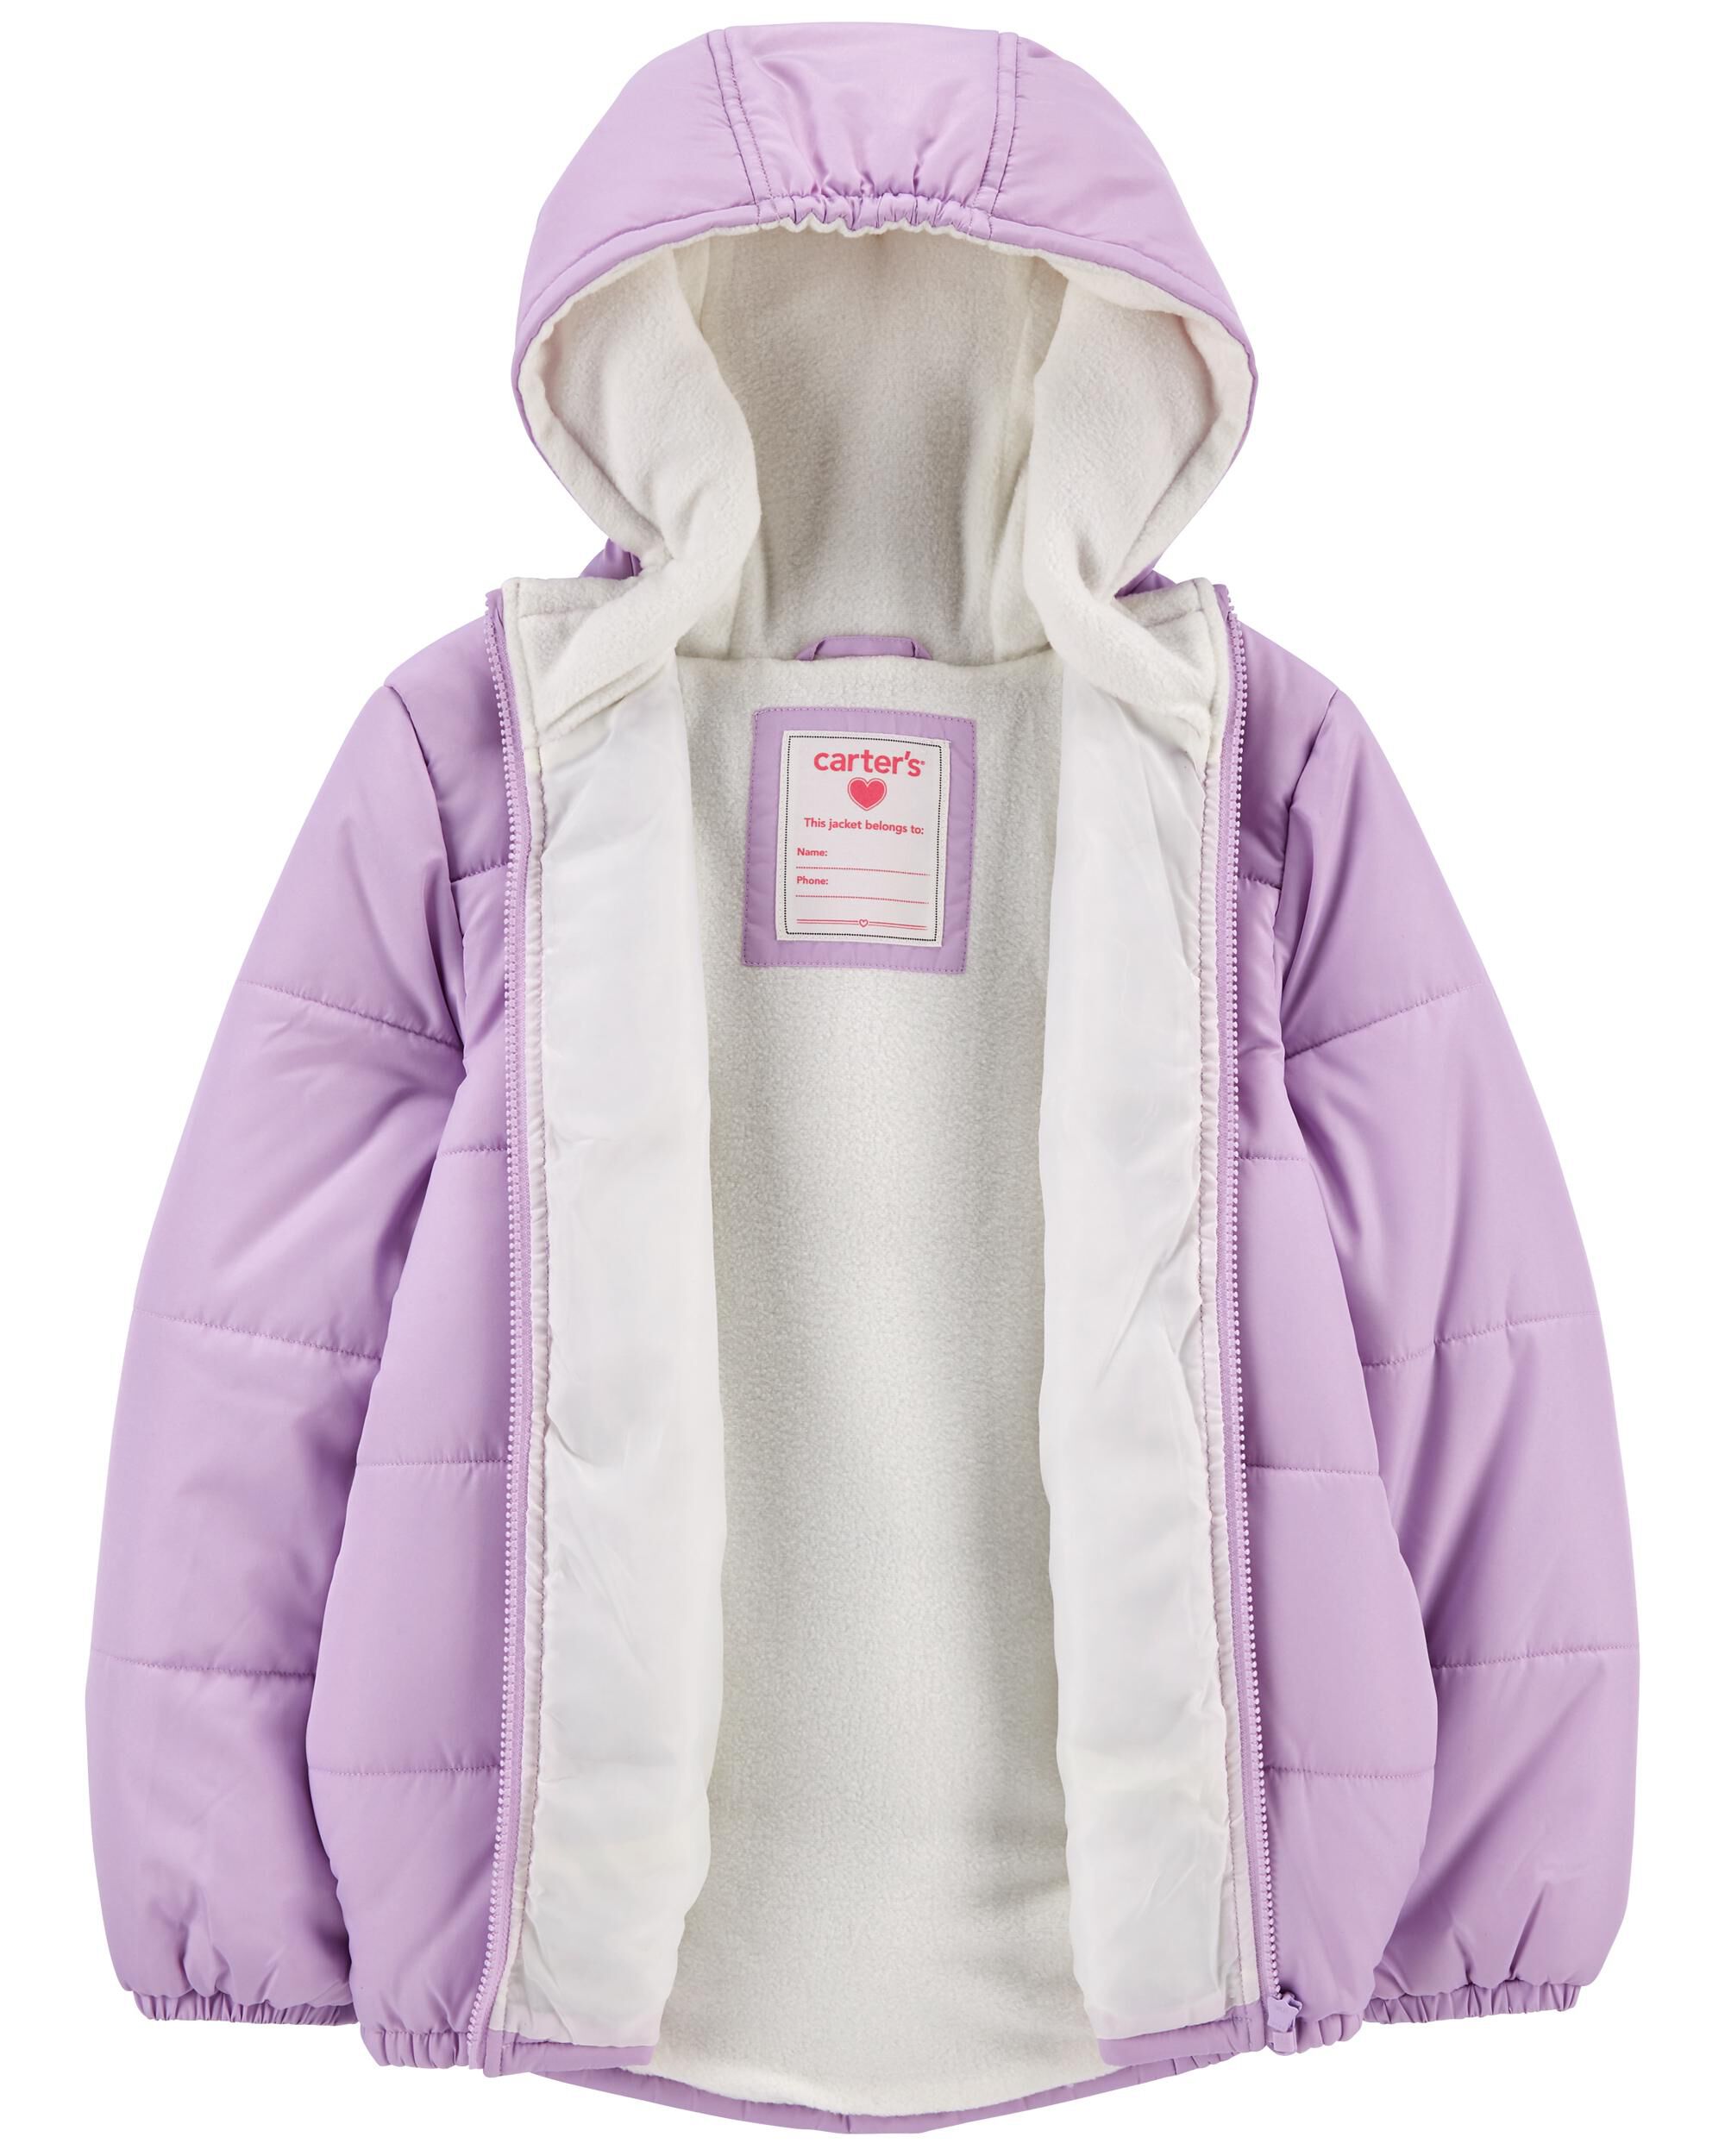 Carter's Infant Girls Violet Parka Outerwear Jacket Size 12M 18M 24M 